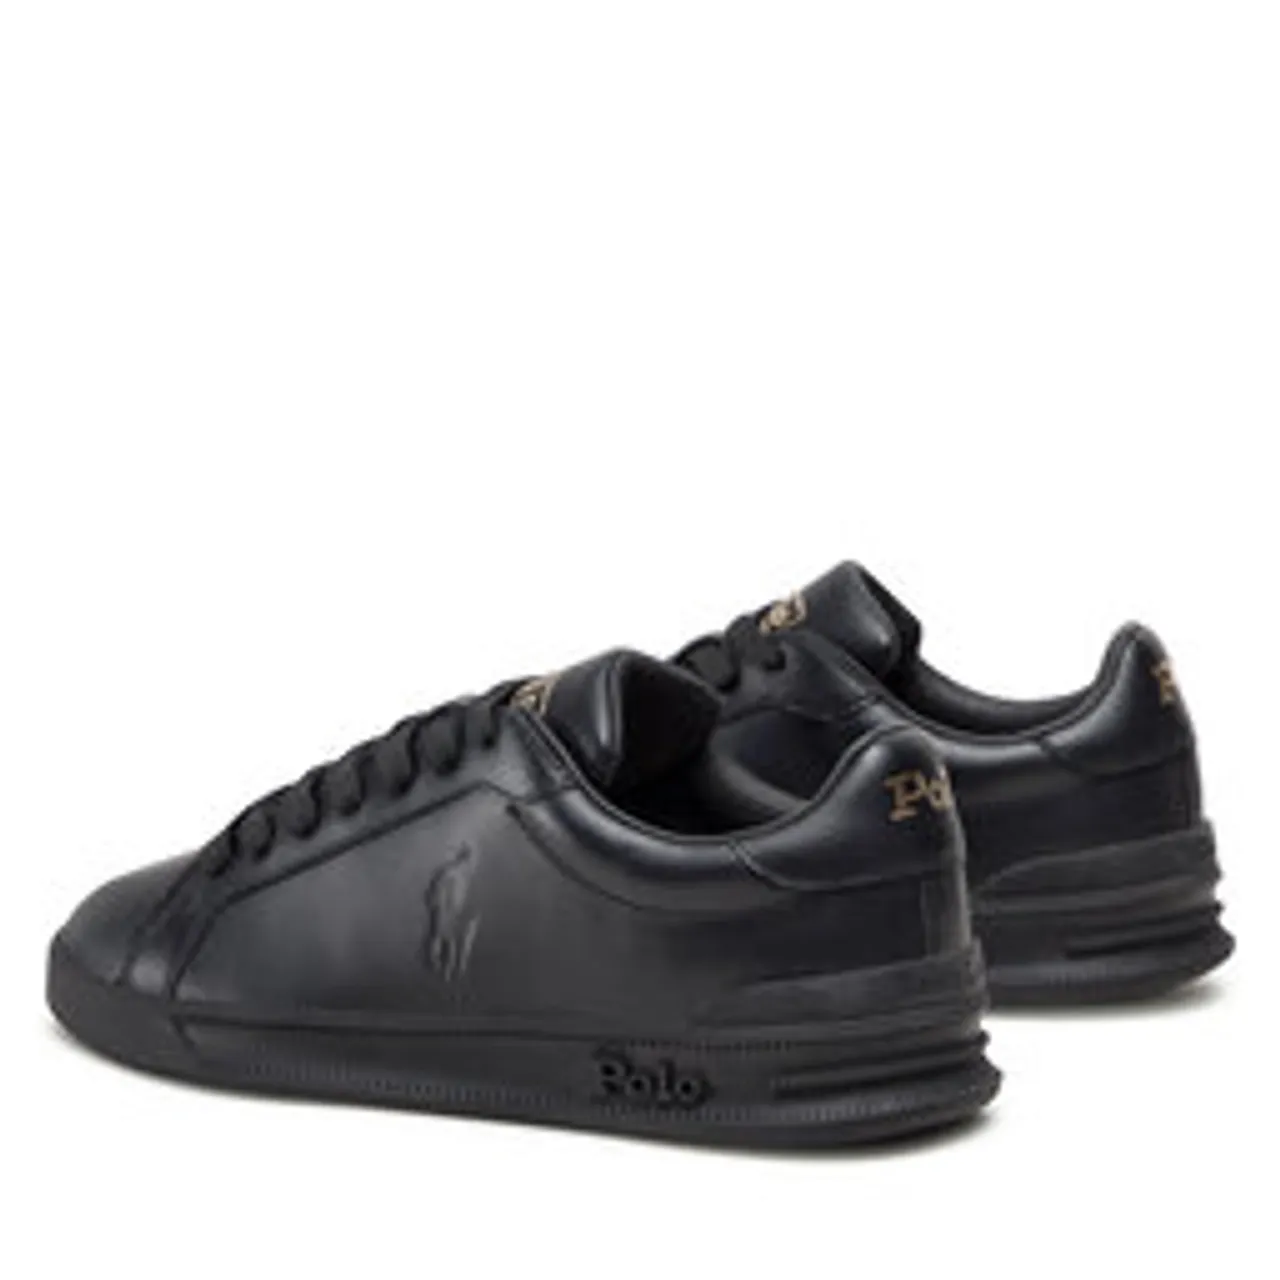 Sneakers Polo Ralph Lauren Hrt Ct II 809845110001 Black